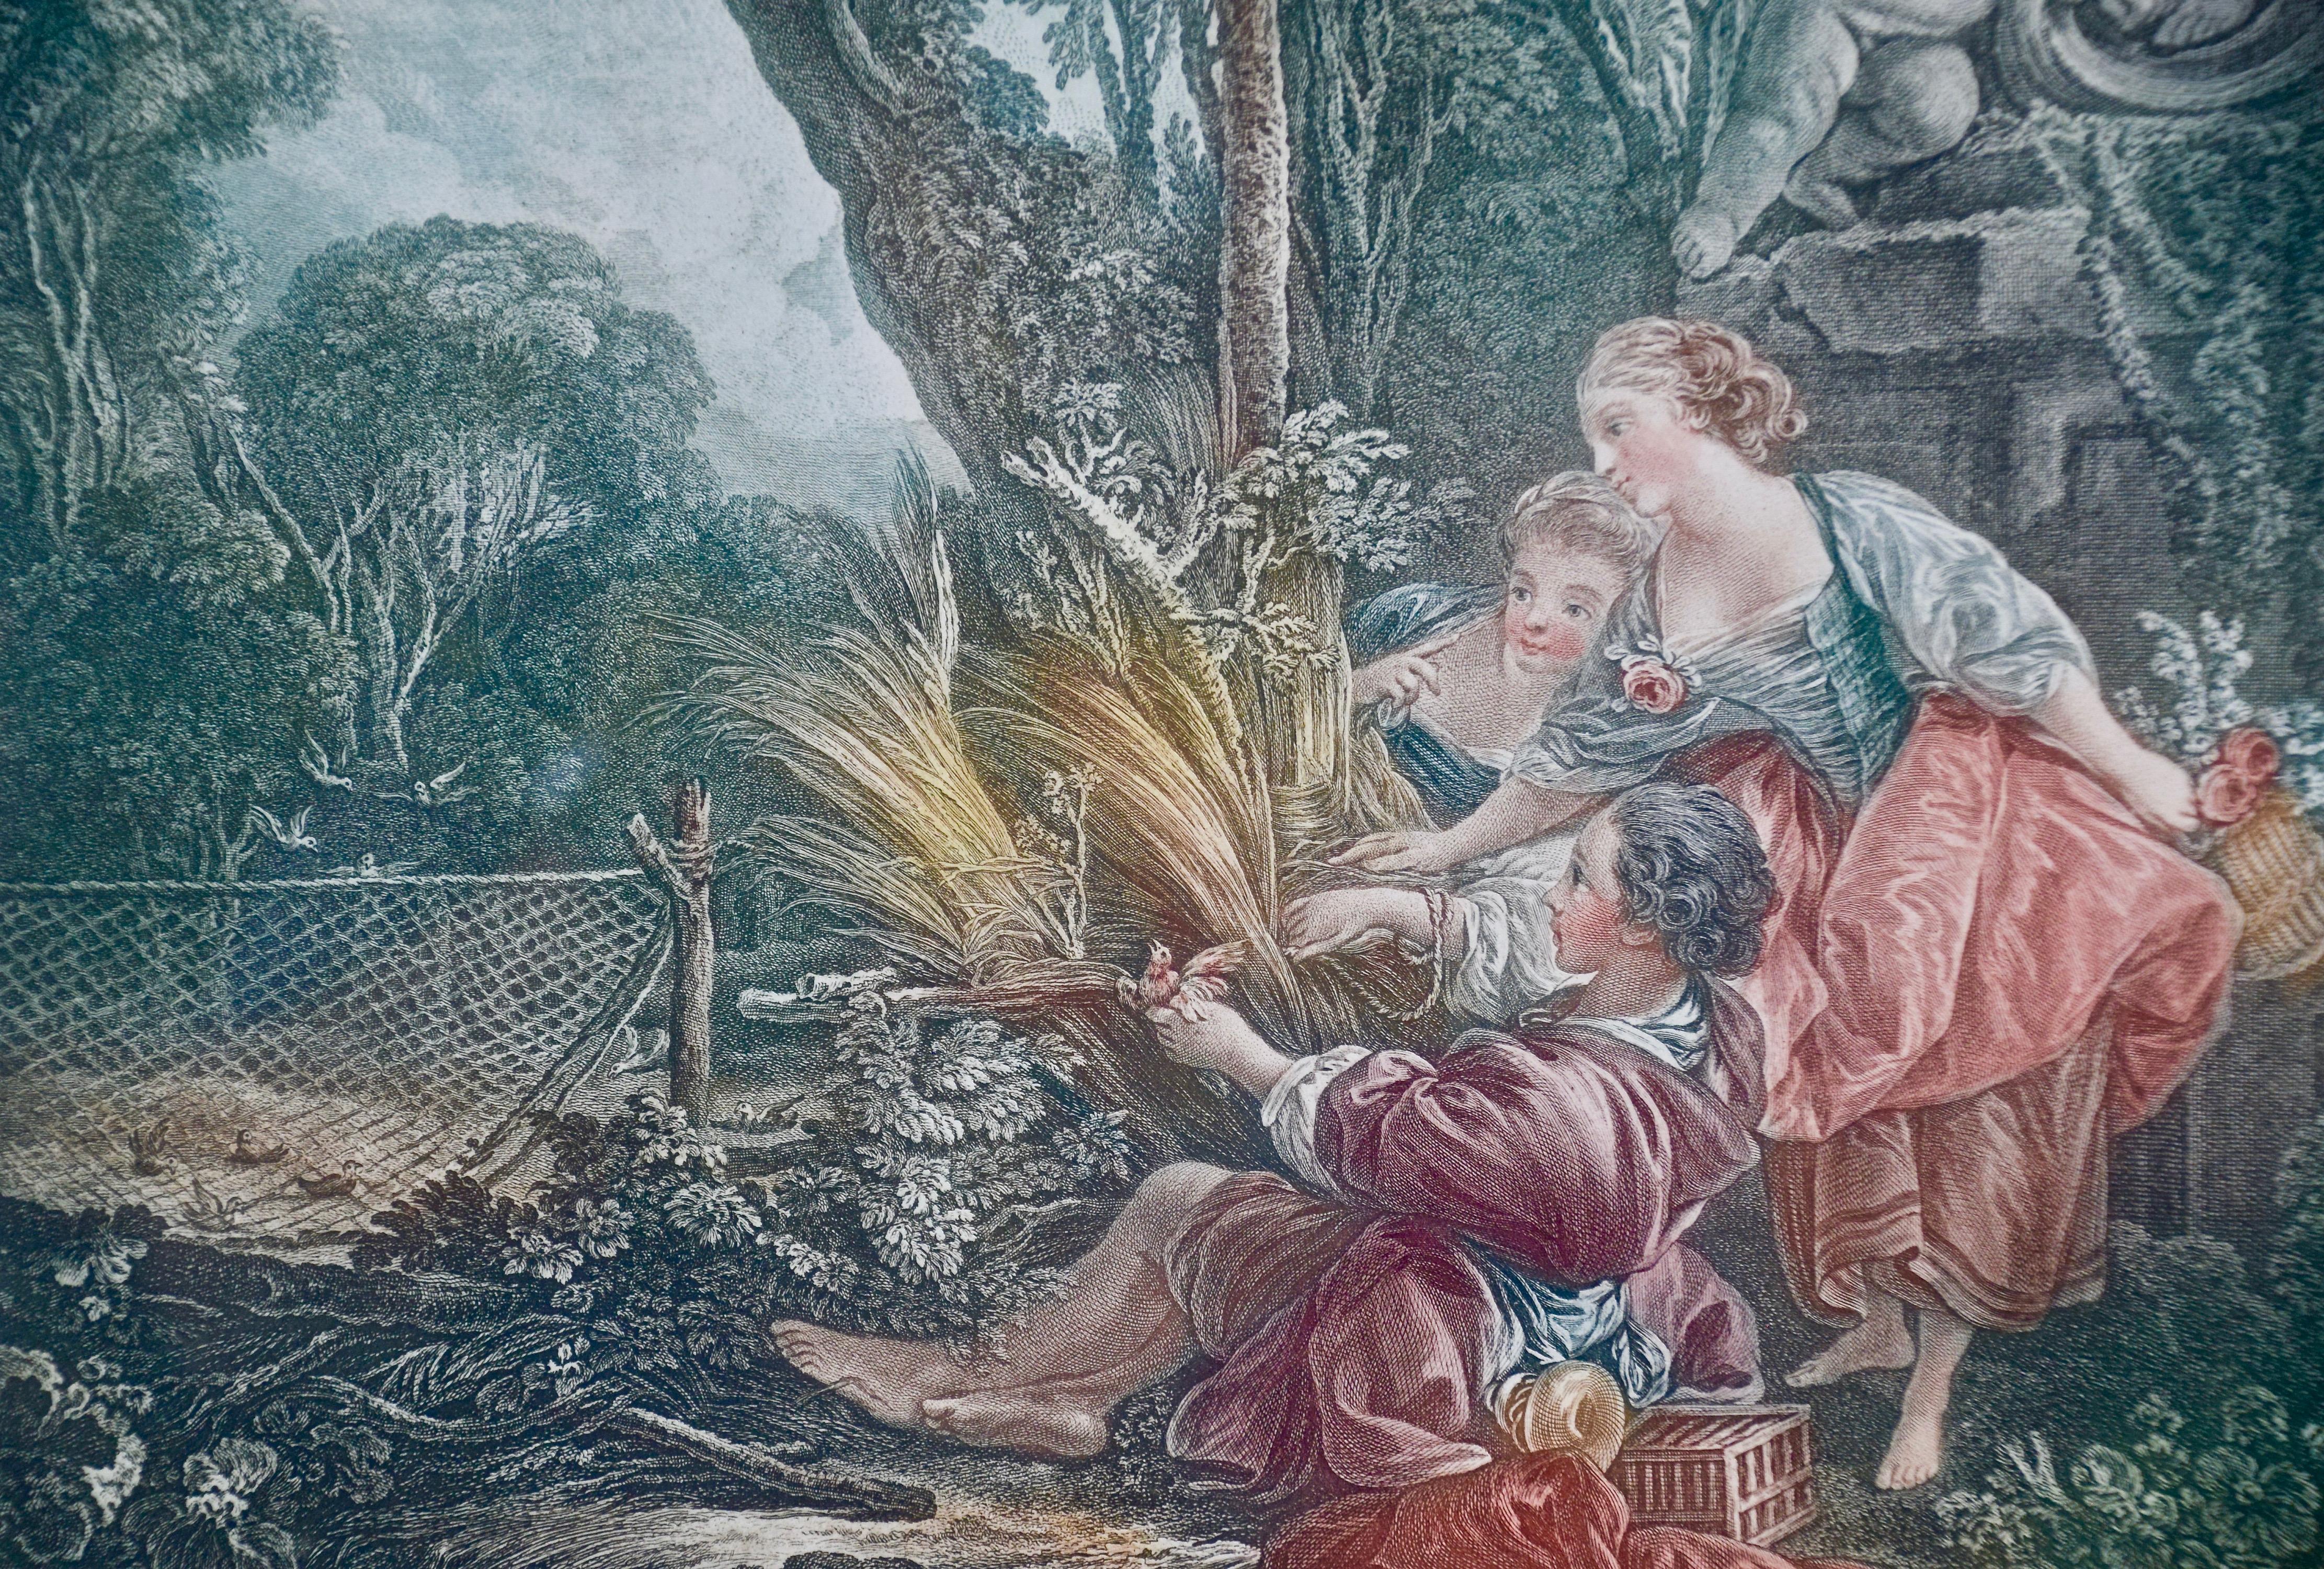 
Ein Paar französischer klassisch-romantischer Drucke, die im 18. Jahrhundert von Jacques-Firmin Beauvarlet (1731-1797) nach Gemälden von Francois Boucher geschaffen wurden  (1703-1770), der sowohl die Technik der Radierung als auch der Gravur